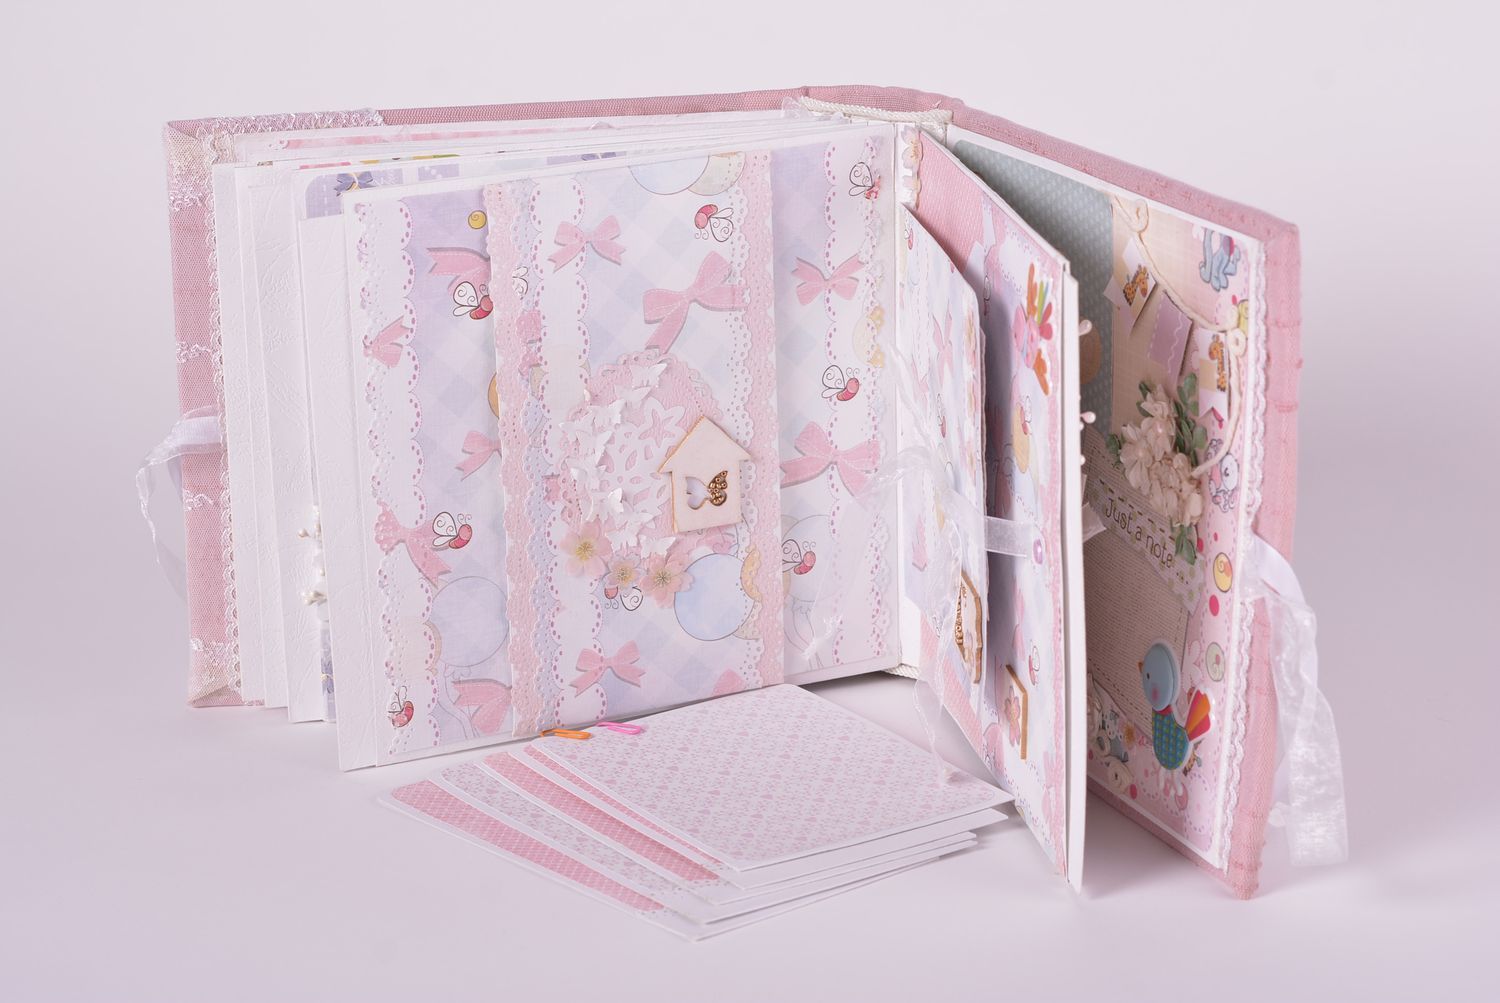 Handmade Stoff Fotoalbum Baby Babyalbum rosa Fotoalbum für Mädchen Geschenk Idee foto 3